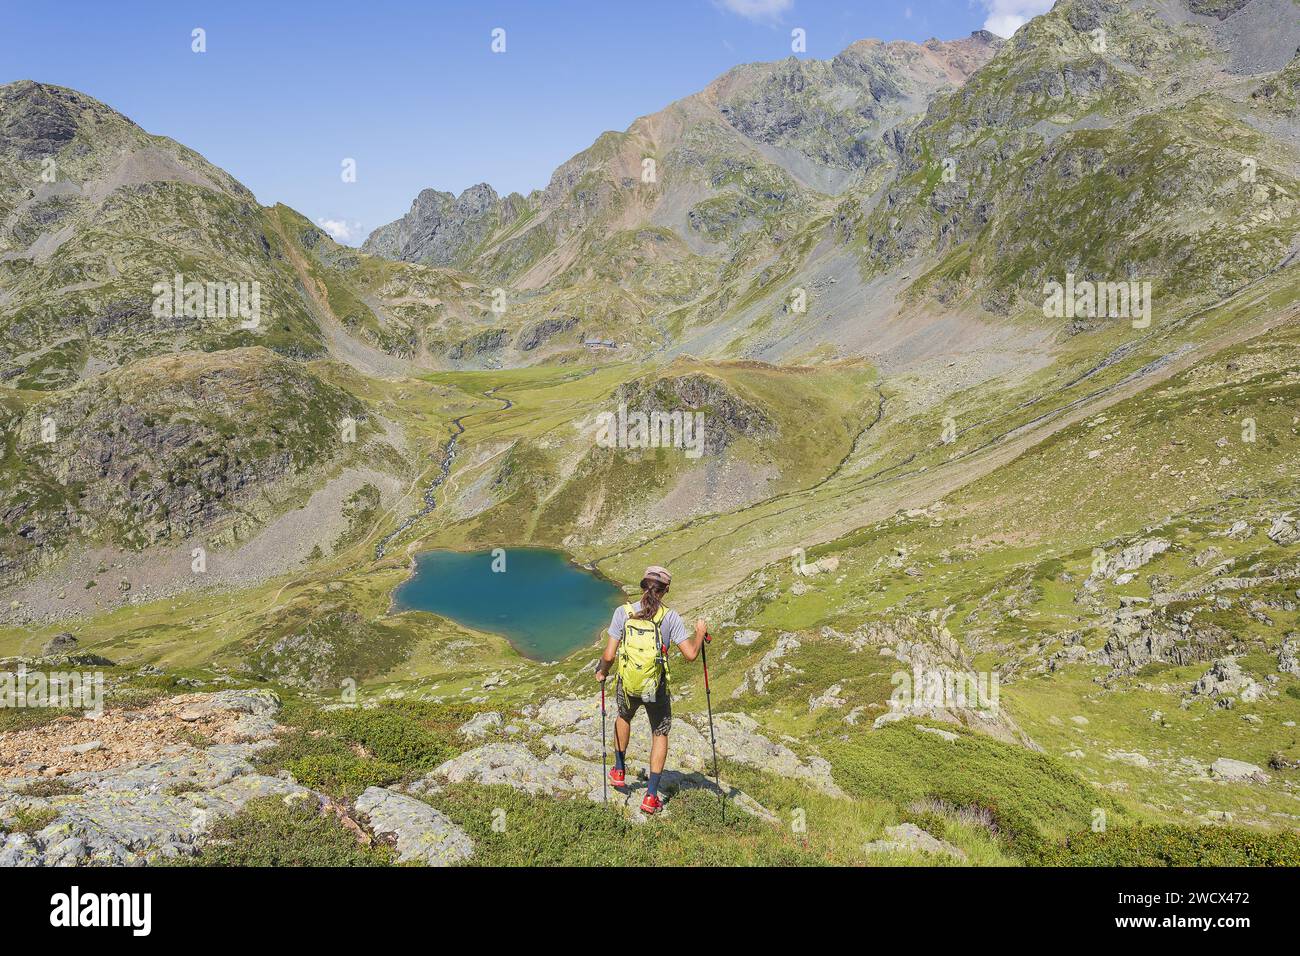 France, Isère (38), randonnée dans le massif de Belledonne, GR 738, découverte d'une montagne encore sauvage, lacs boréaux Banque D'Images